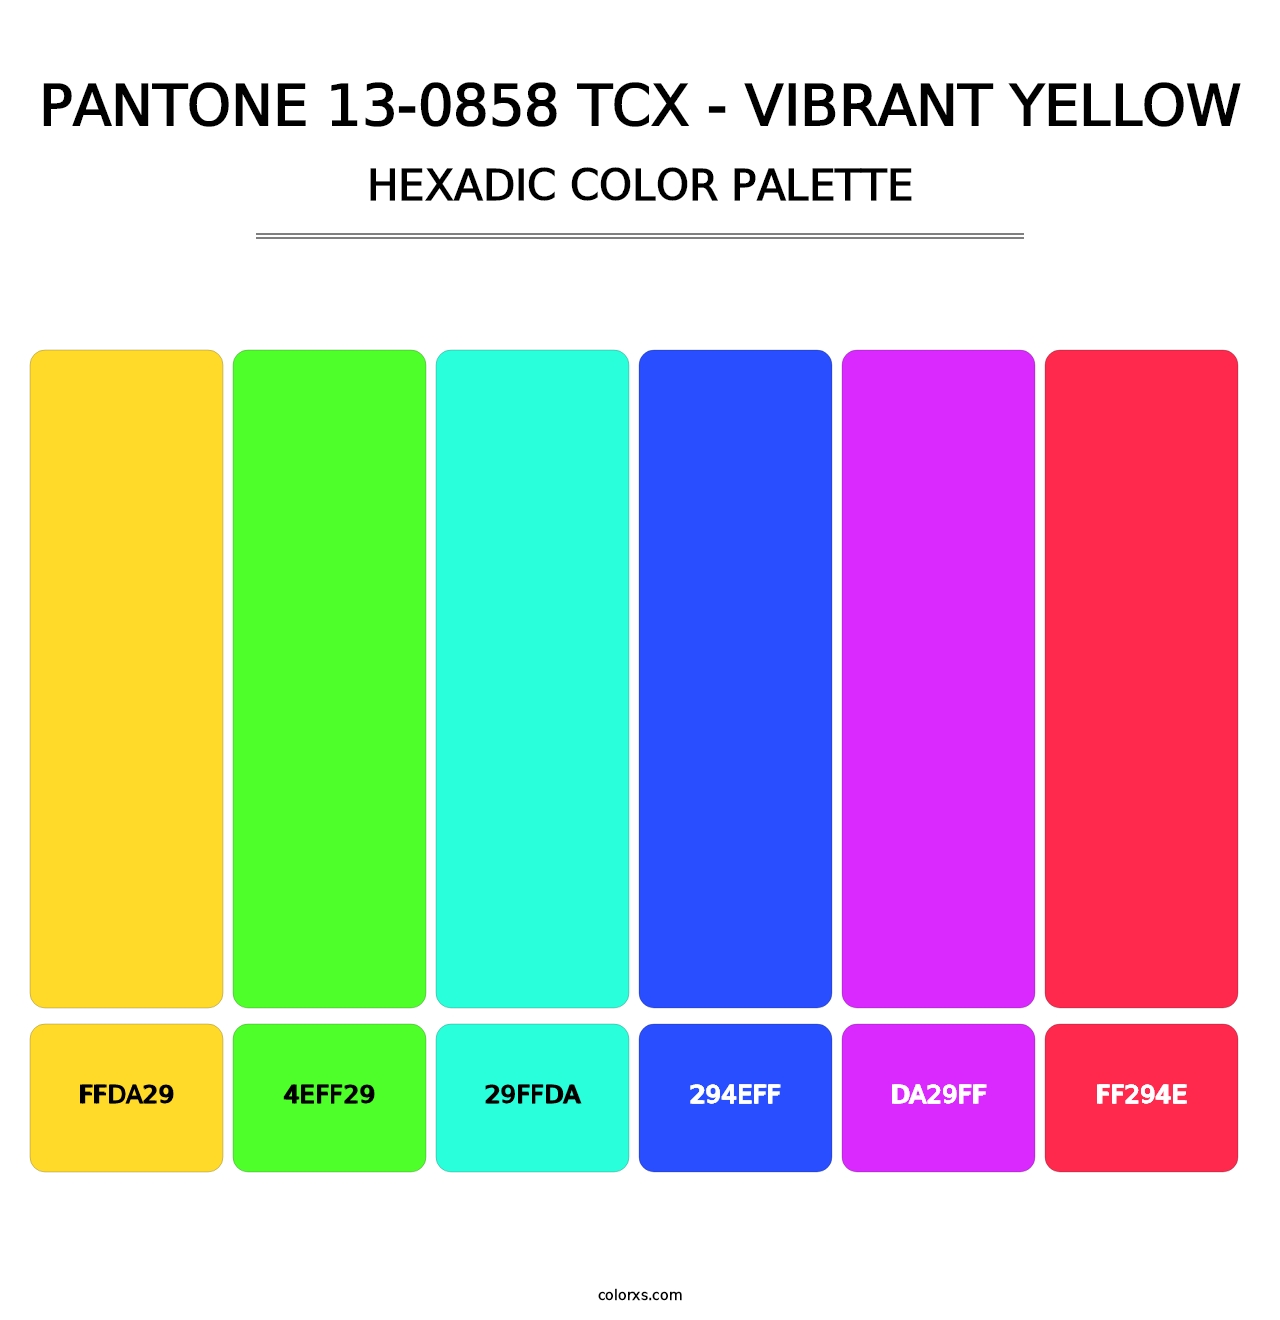 PANTONE 13-0858 TCX - Vibrant Yellow - Hexadic Color Palette